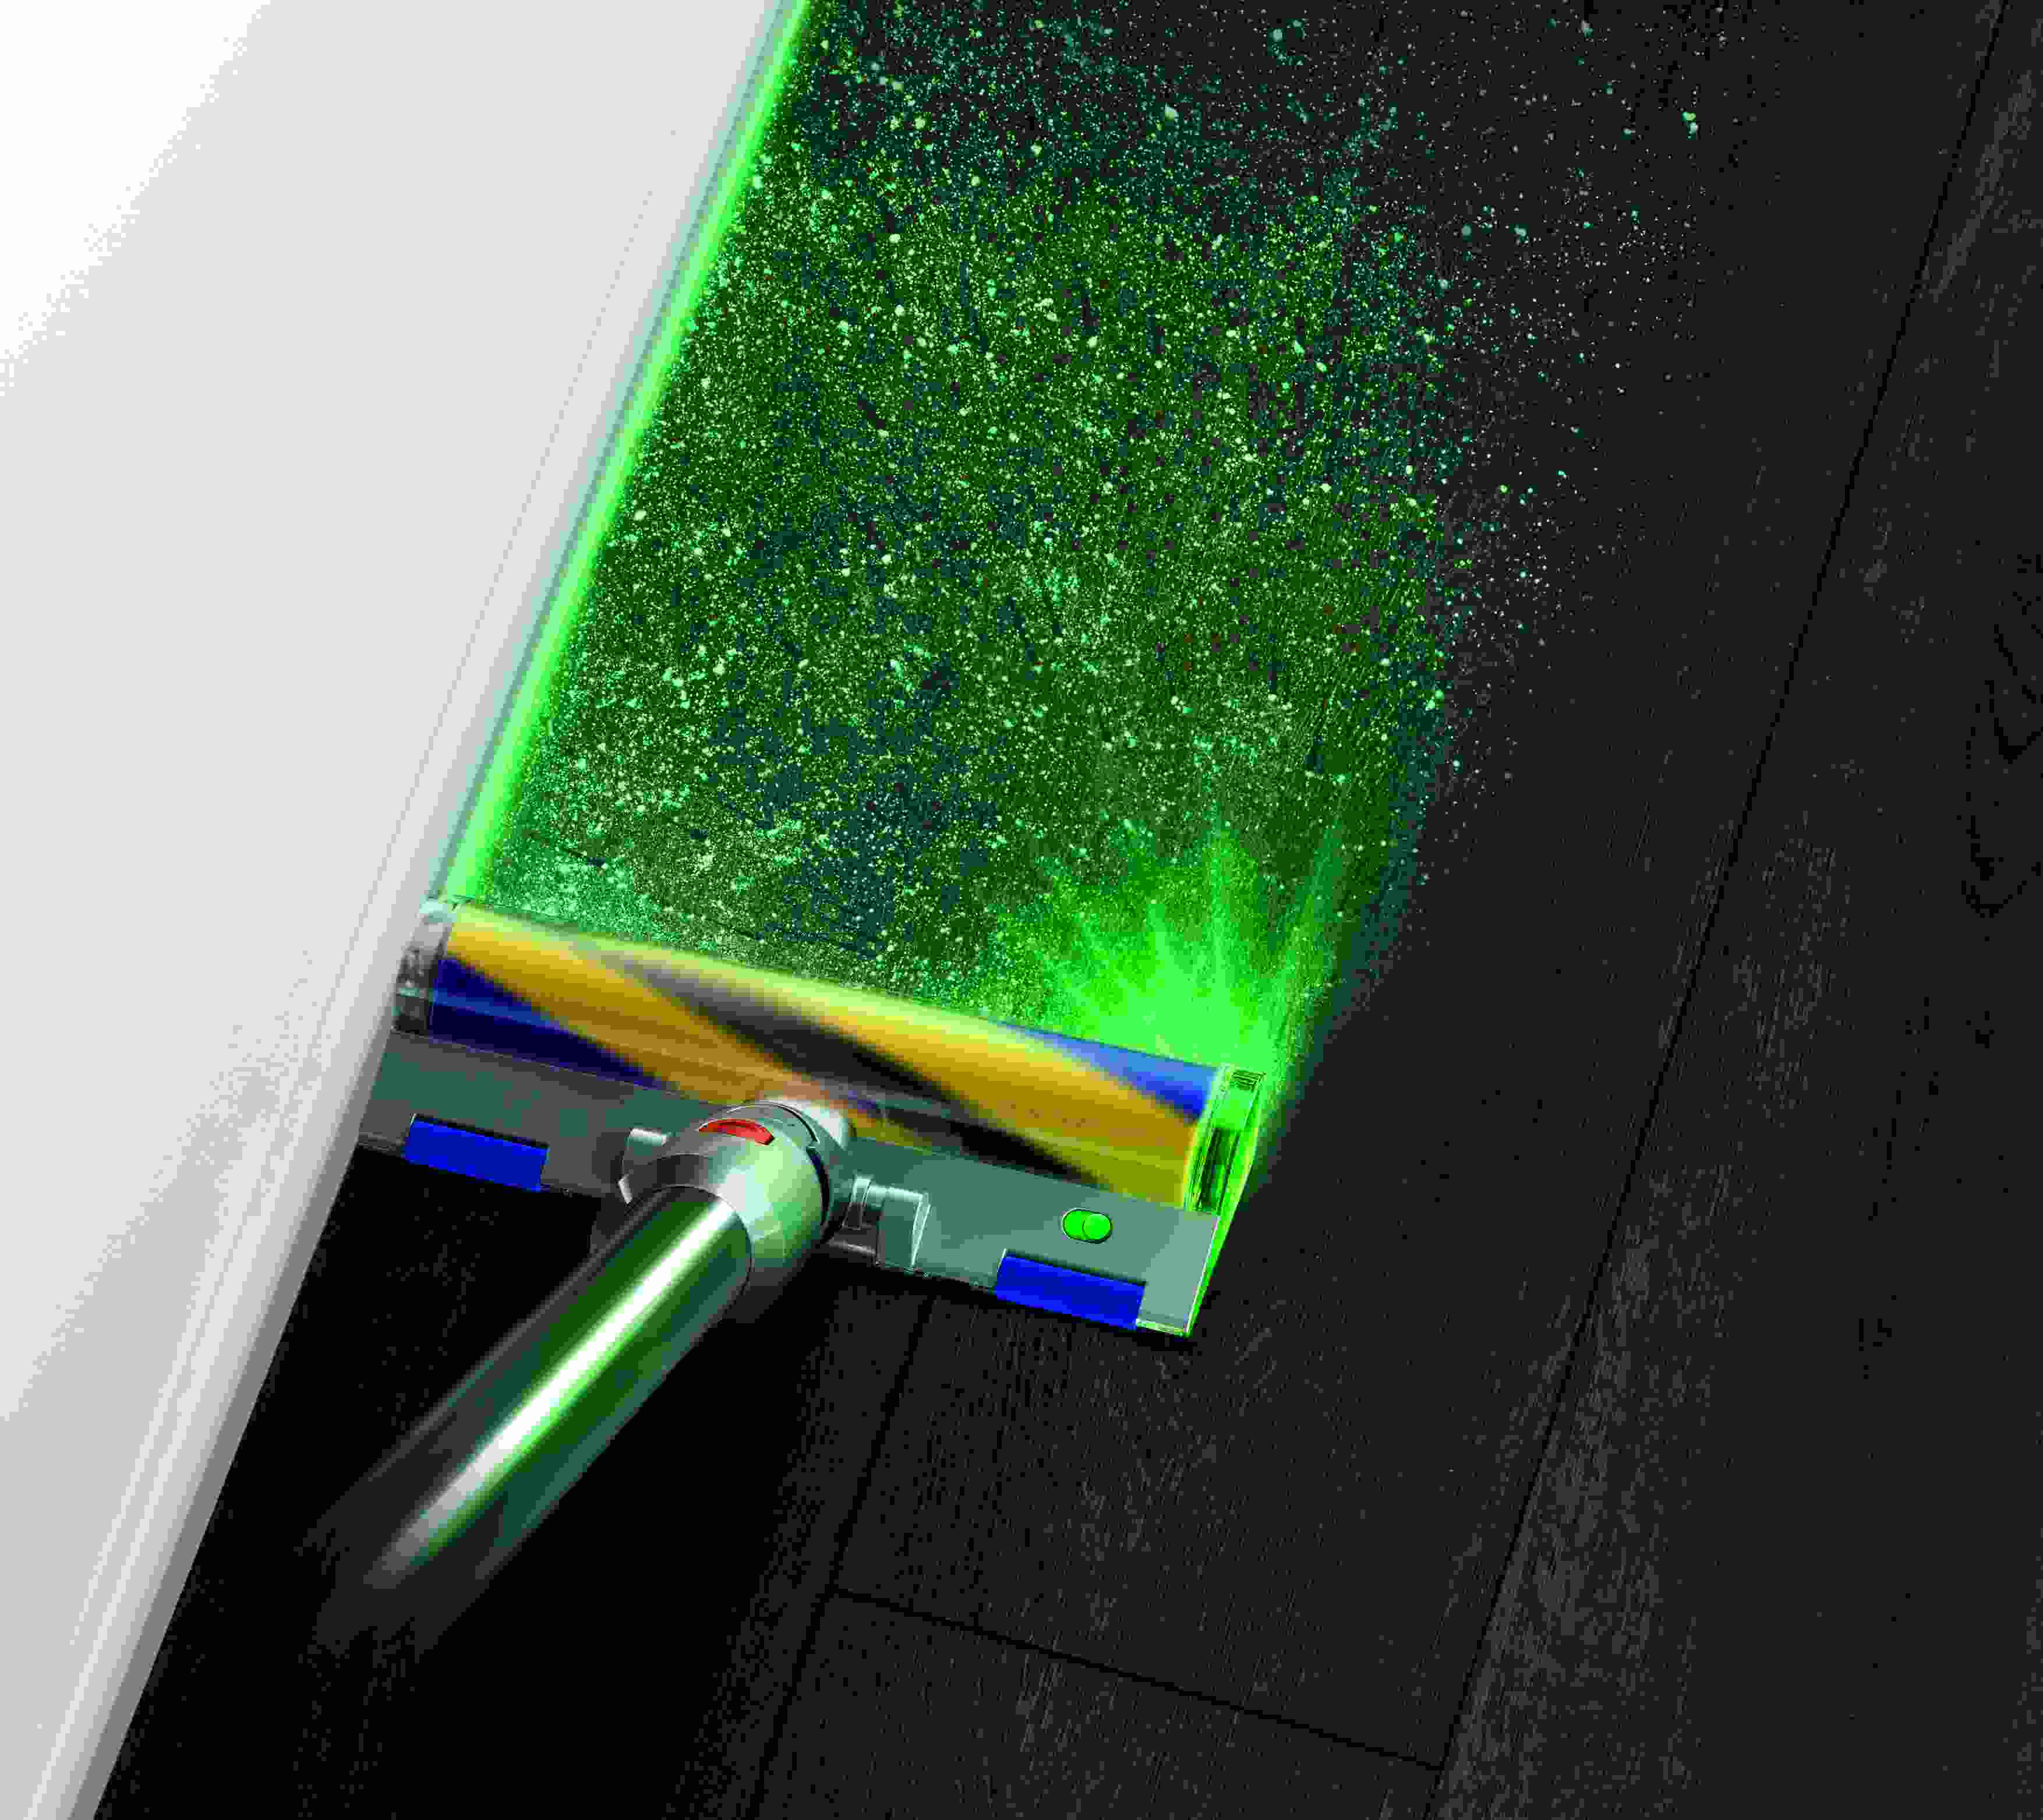 DysonV15Detect groen laser met sof